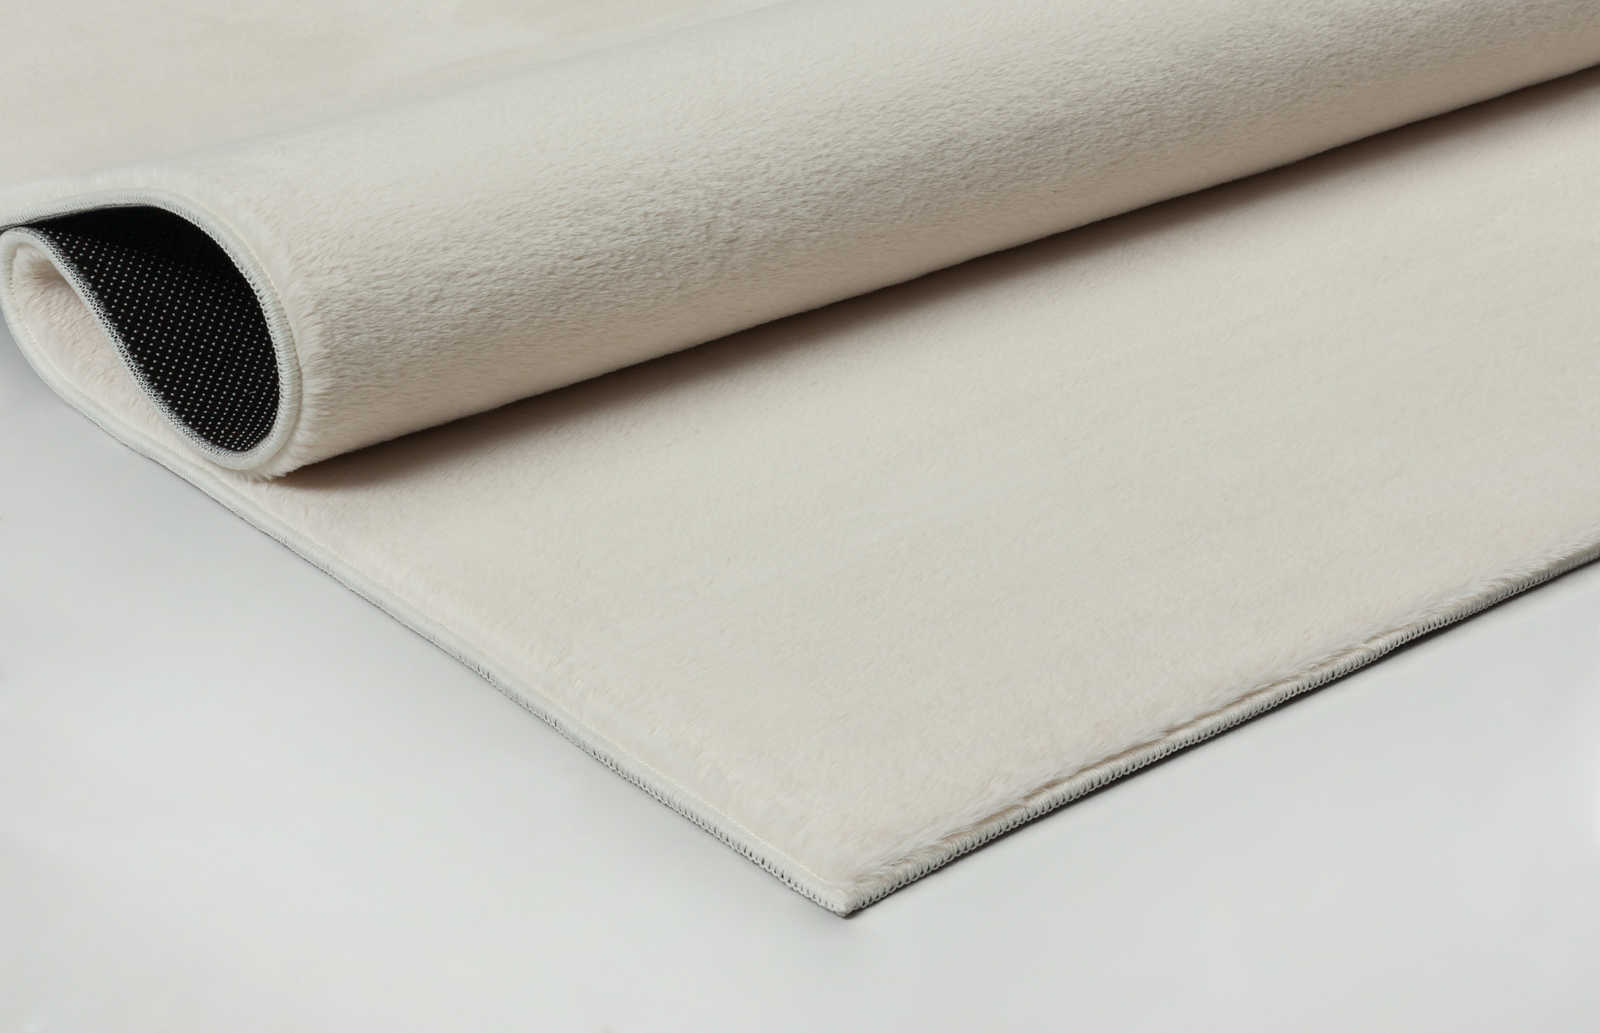             Zacht hoogpolig tapijt in crème - 220 x 160 cm
        